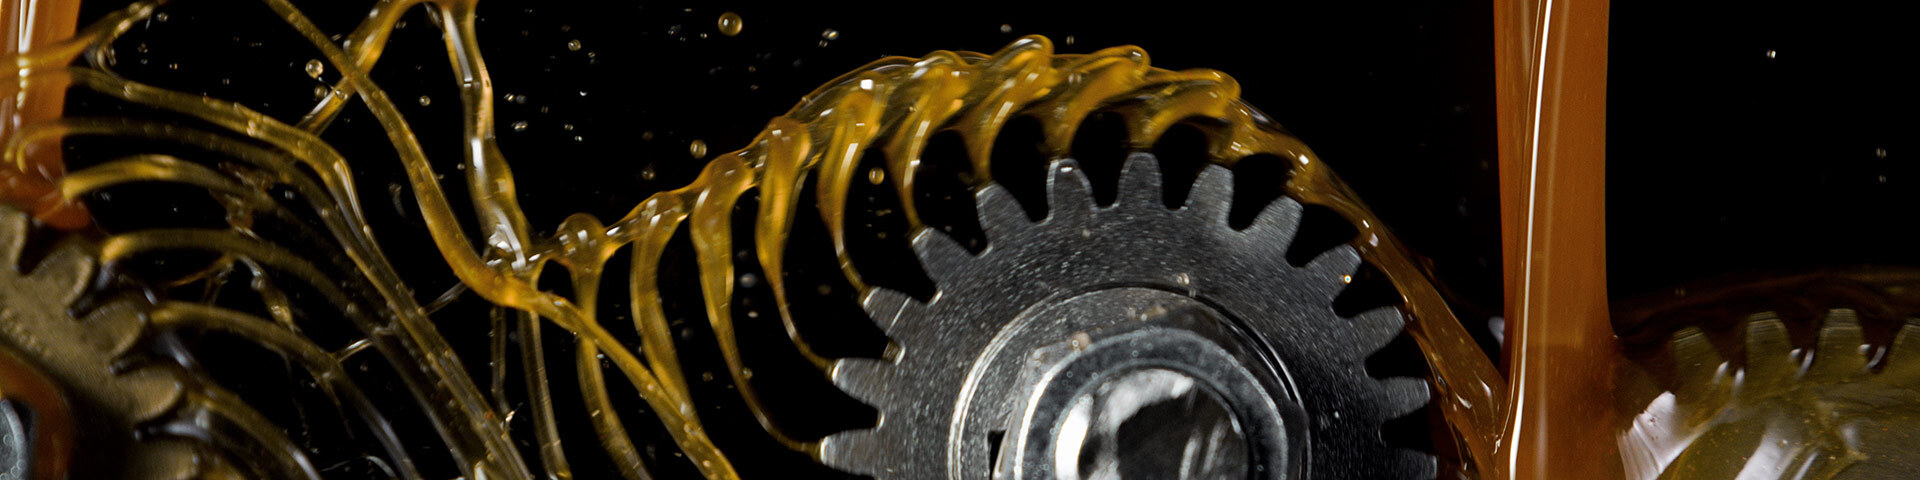 Engrenage sous un jet d'huile, symbolisant la mécanique et l'innovation technologique.